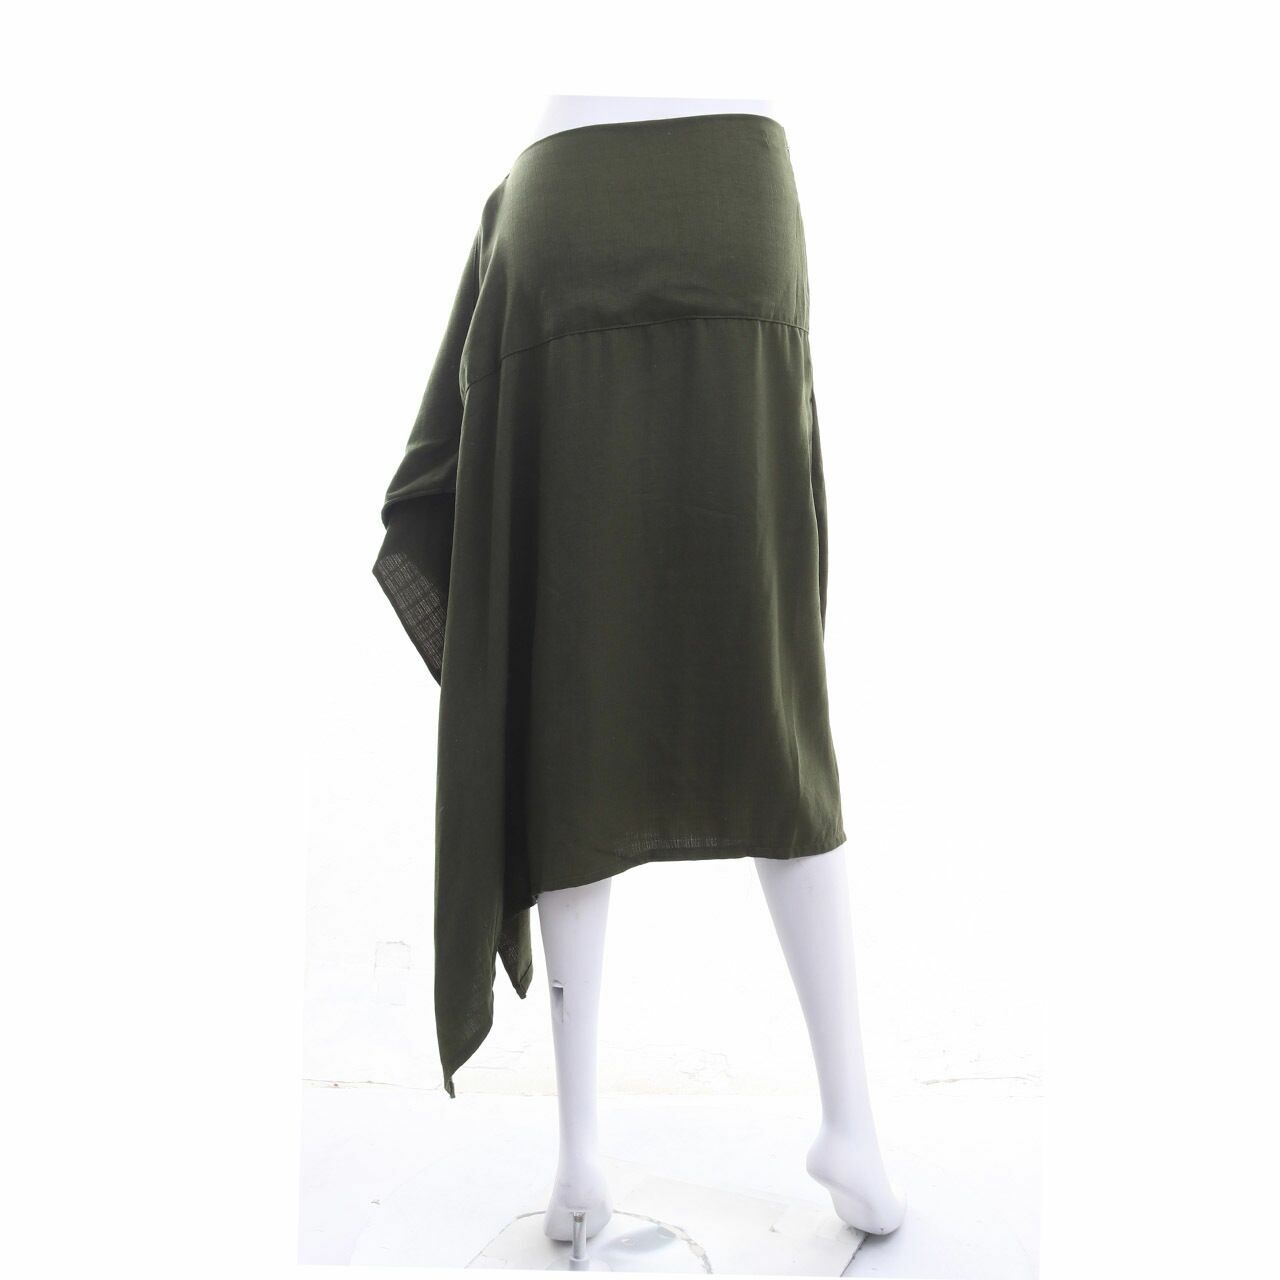 Ralyka Green Midi Skirt